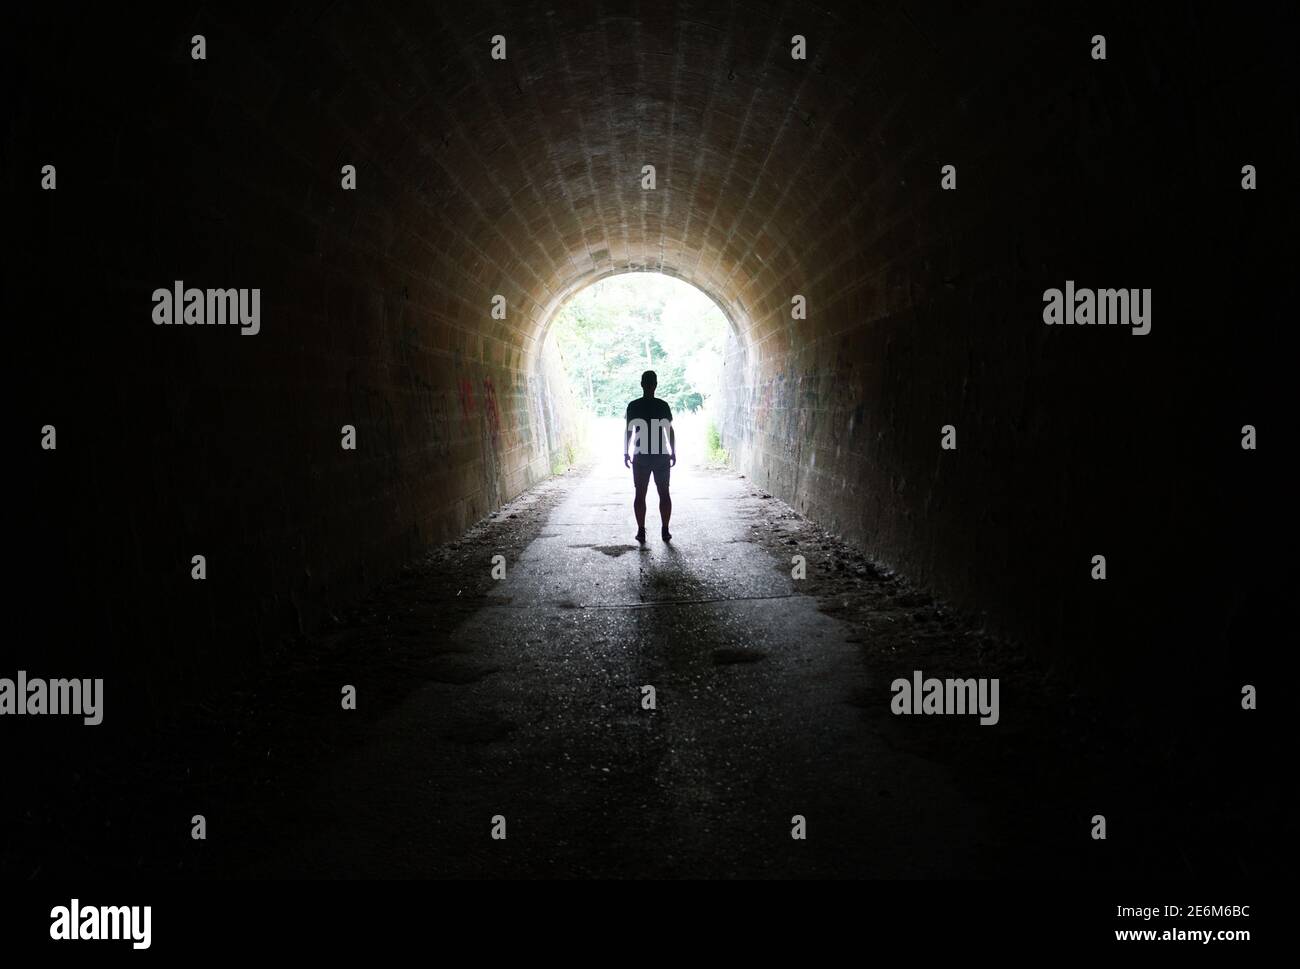 Entfliehen Sie der Dunkelheit - Silhouette des Menschen im Stehen Licht am Ende des Tunnels Stockfoto